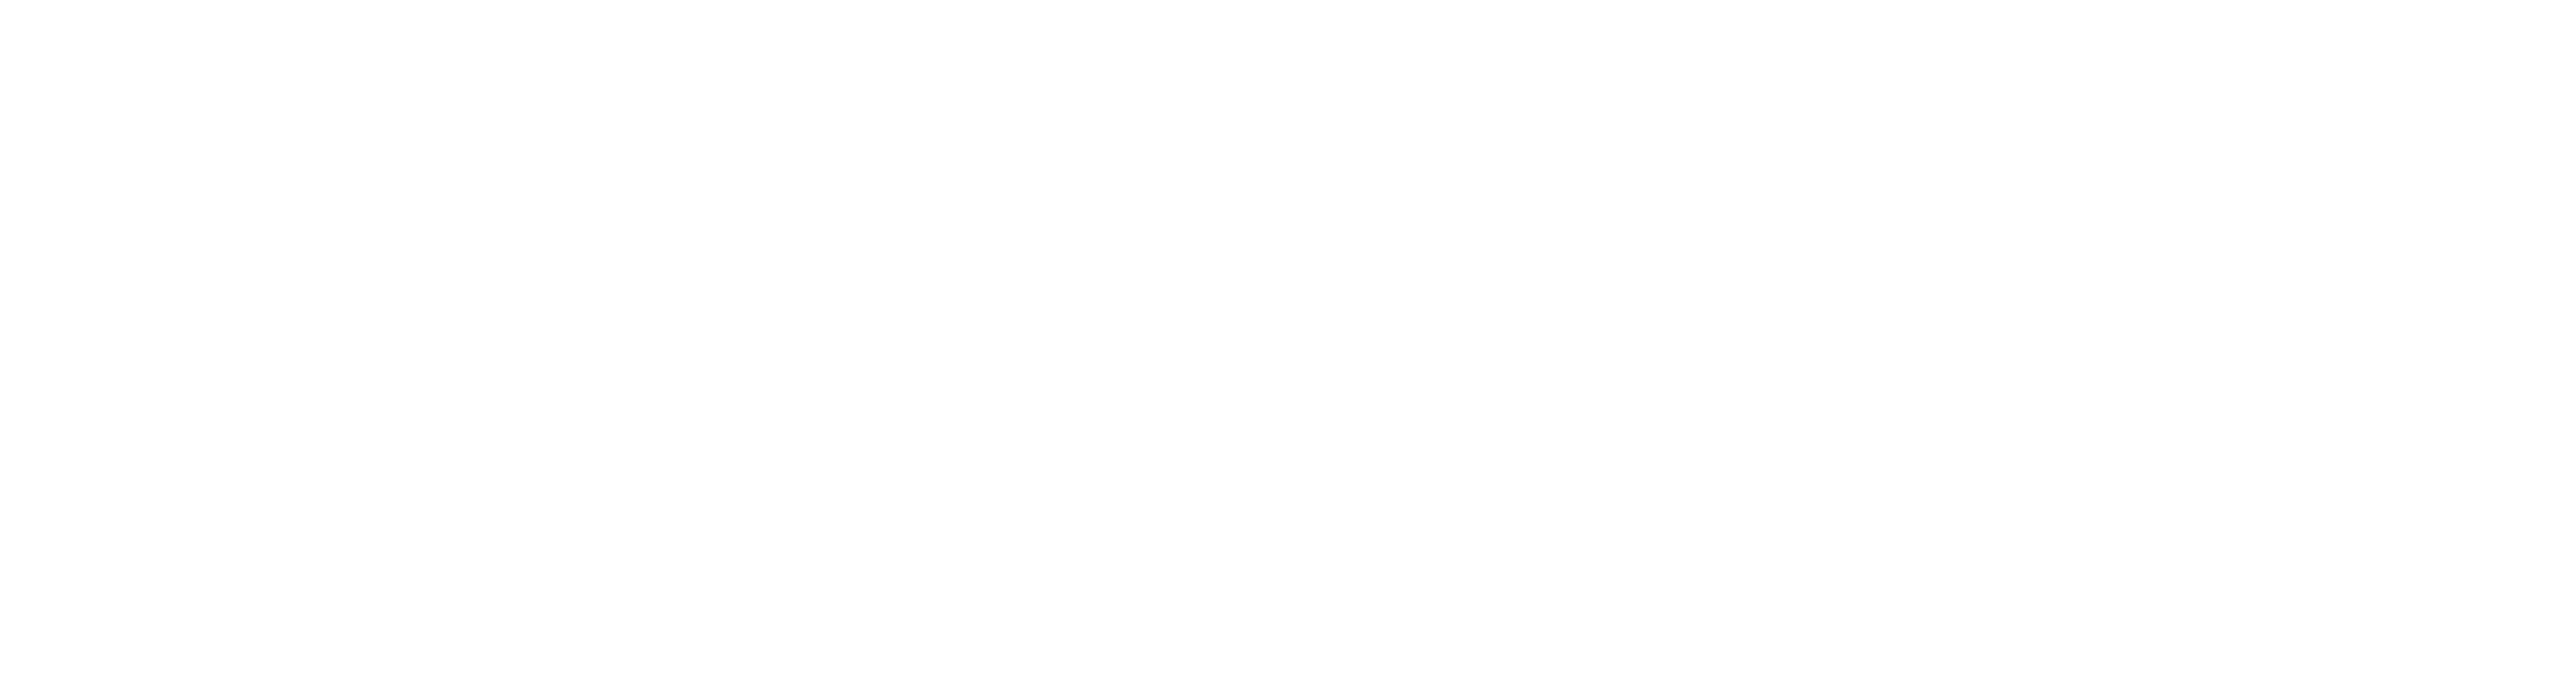 Labhidouille, le FabLab de l'habitat inclusif by Familles Solidaires